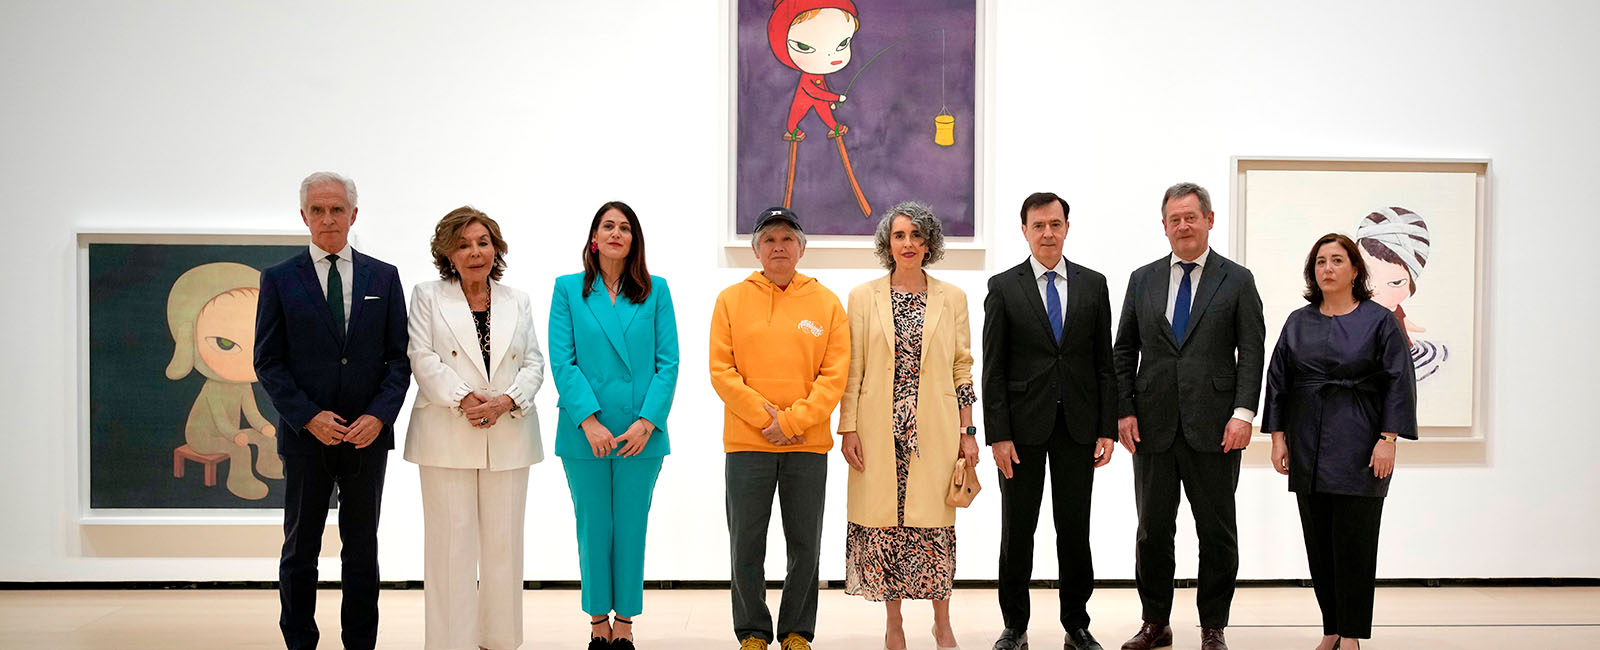 Inauguración de la exposición de Yoshitomo Nara en el Museo Guggenheim Bilbao